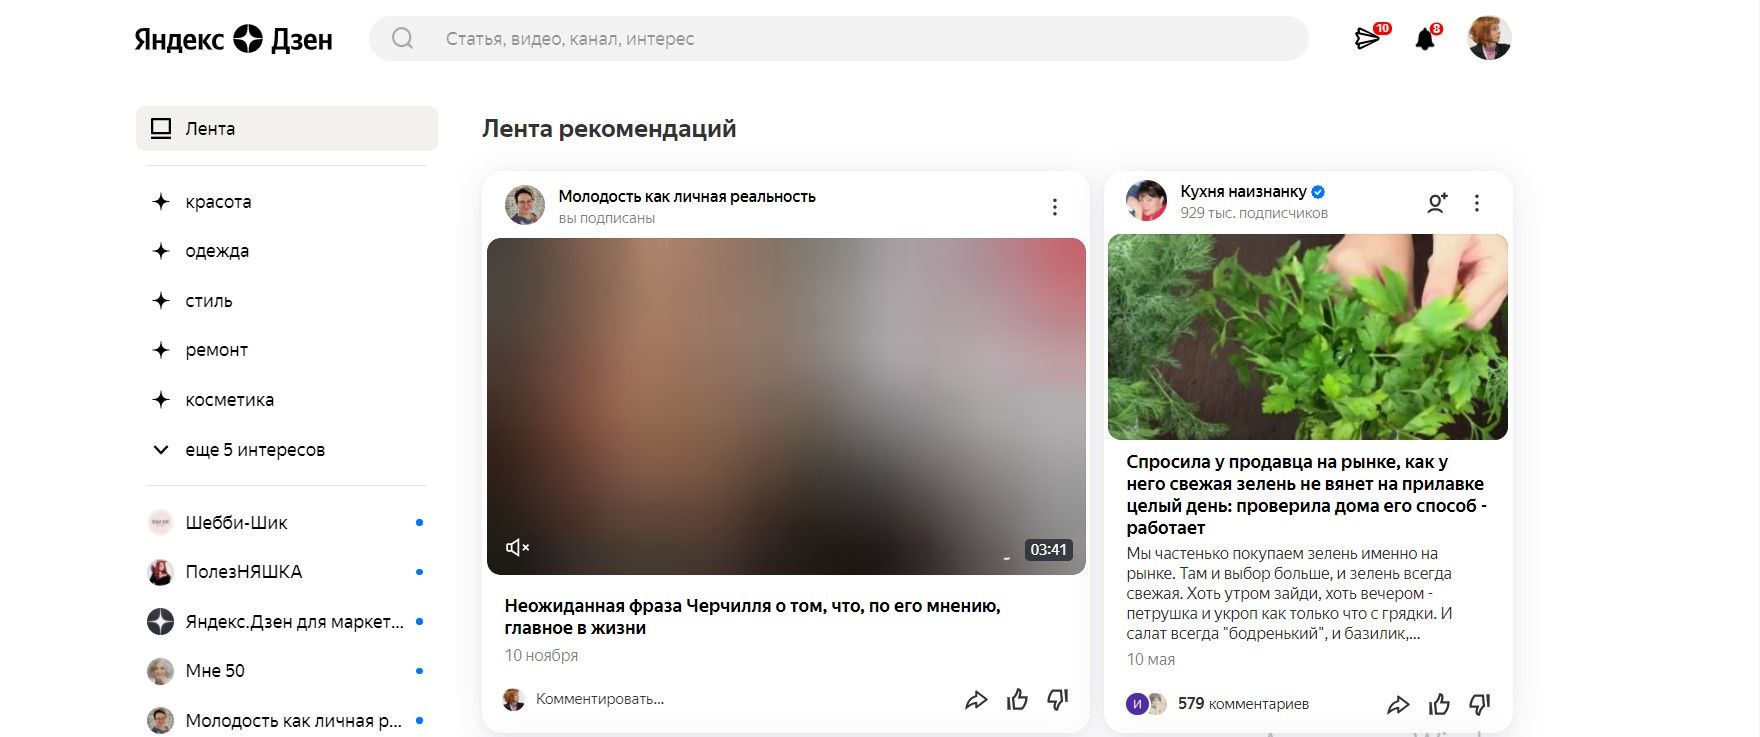 Аудитория Яндекс.Дзена – больше 16 000 000 пользователей